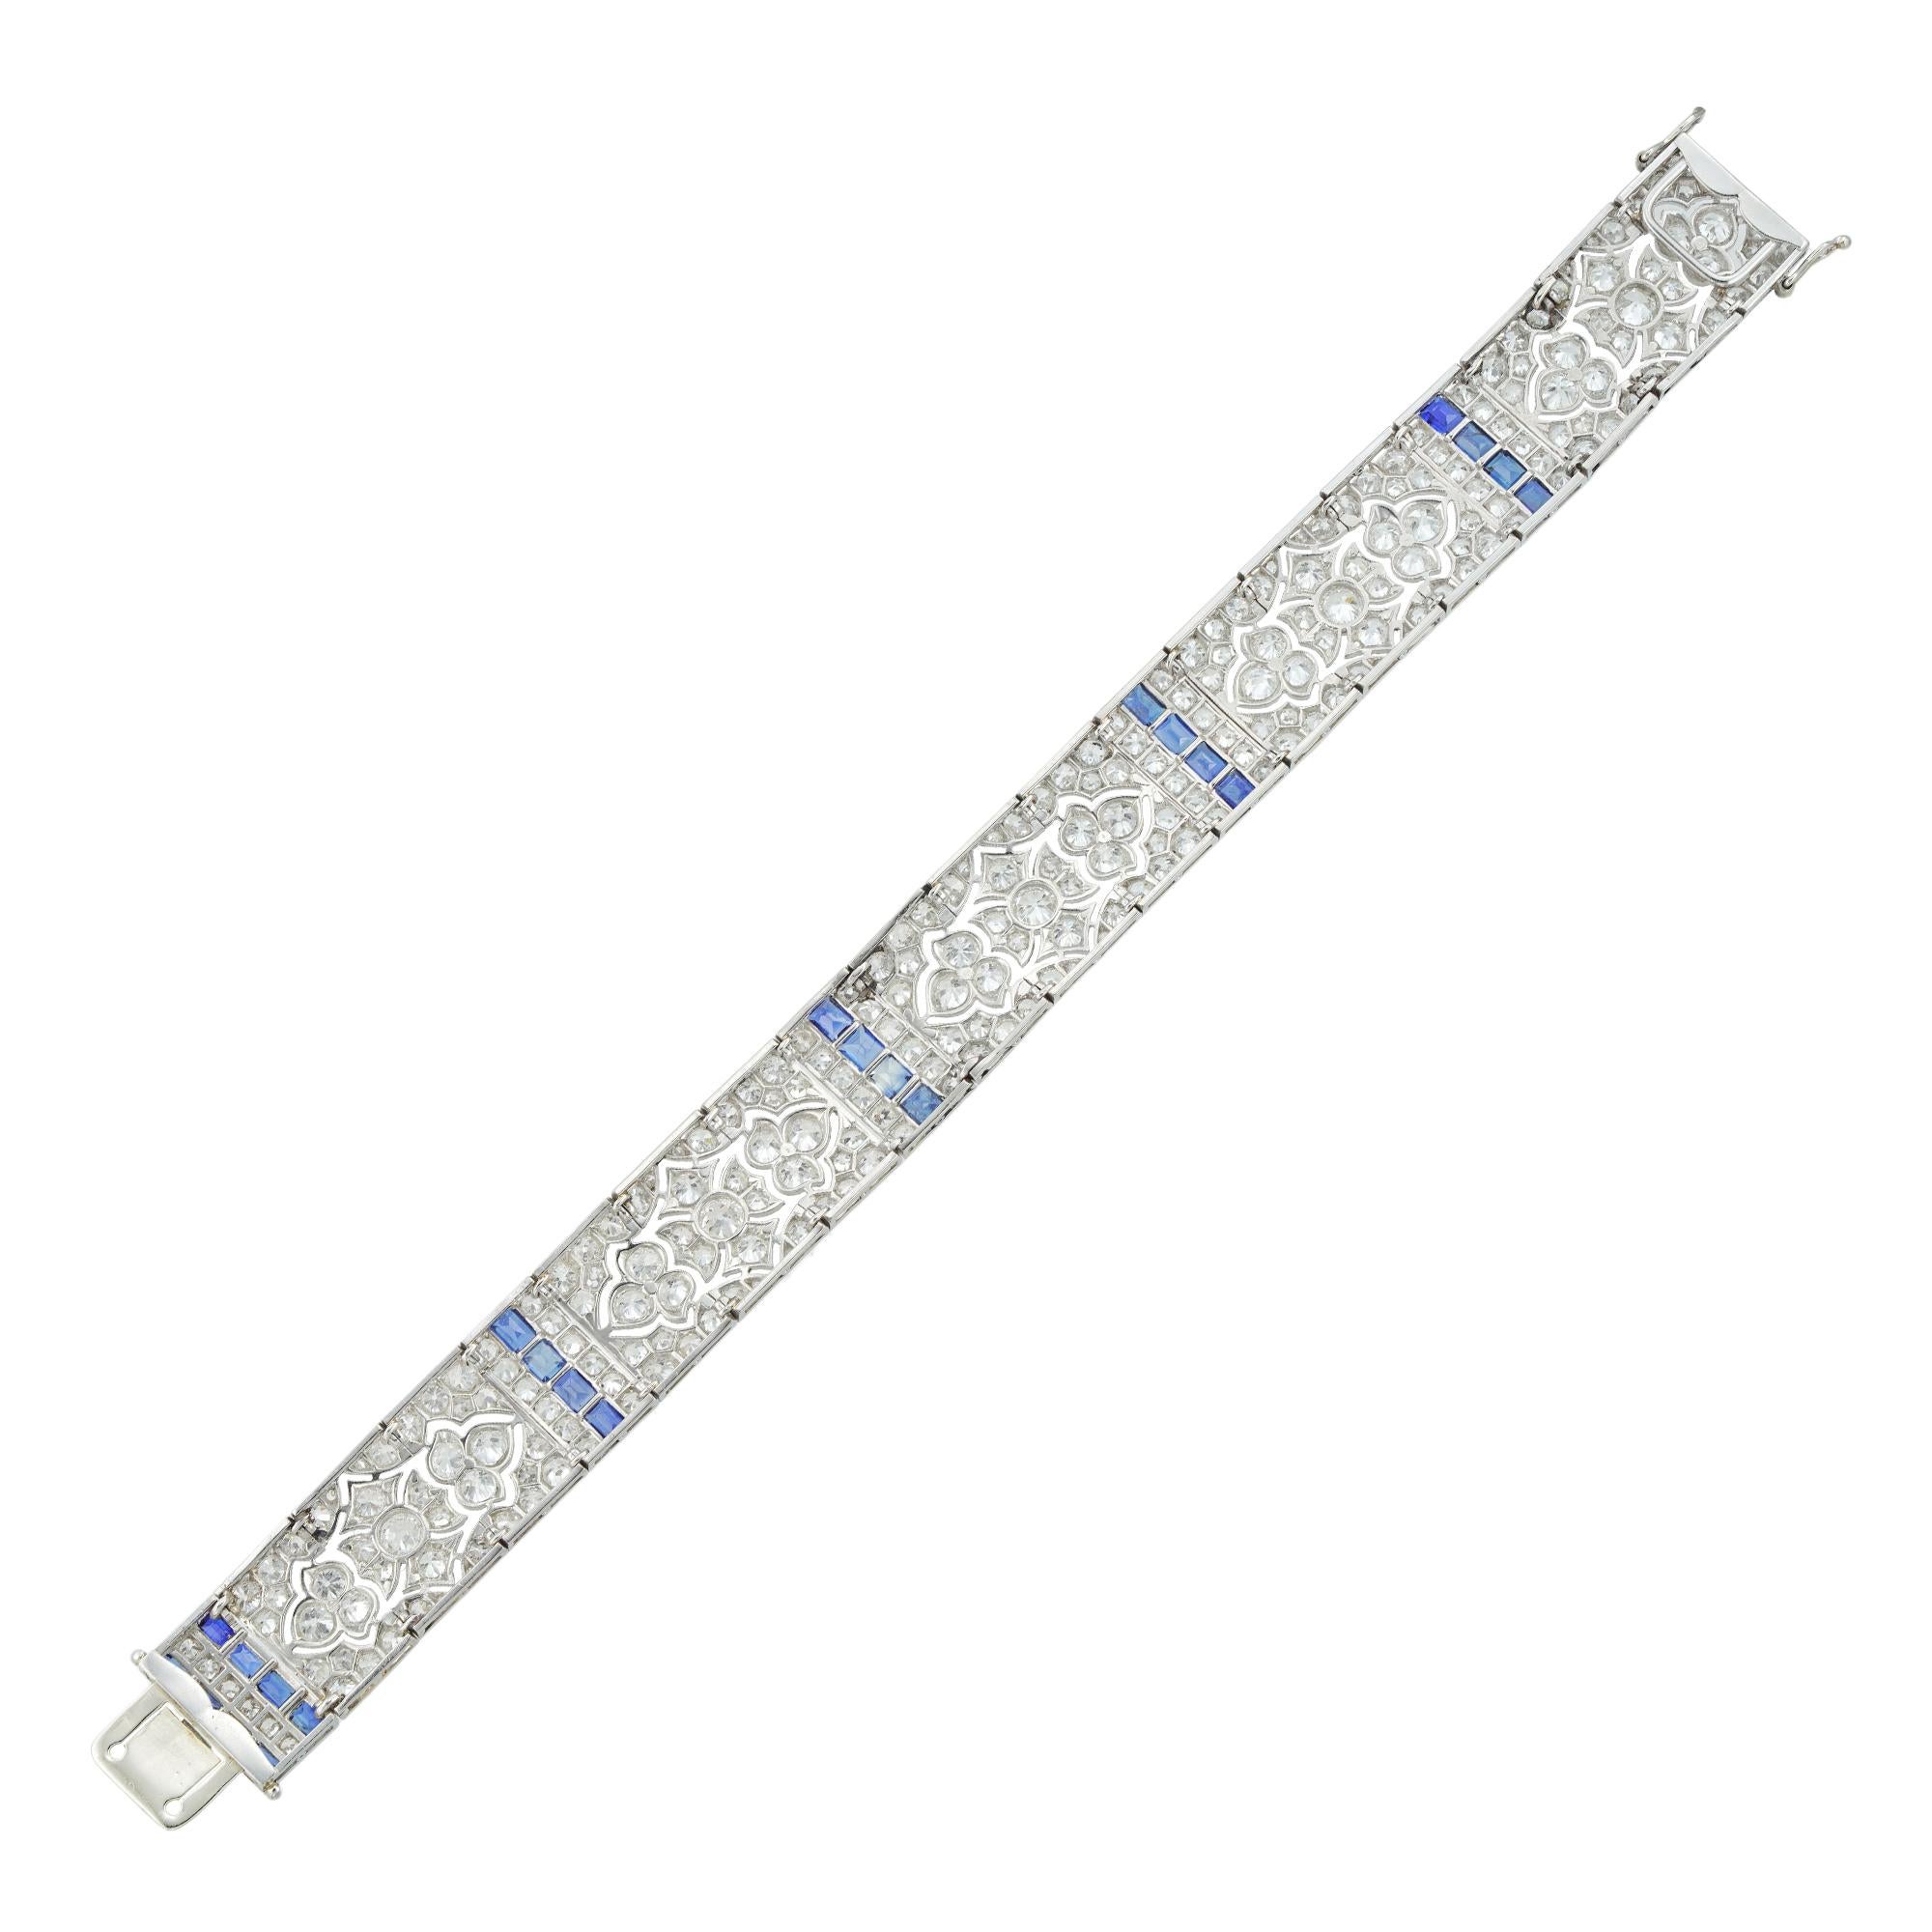 Brilliant Cut Important Late Belle Époque Sapphire and Diamond Bracelet